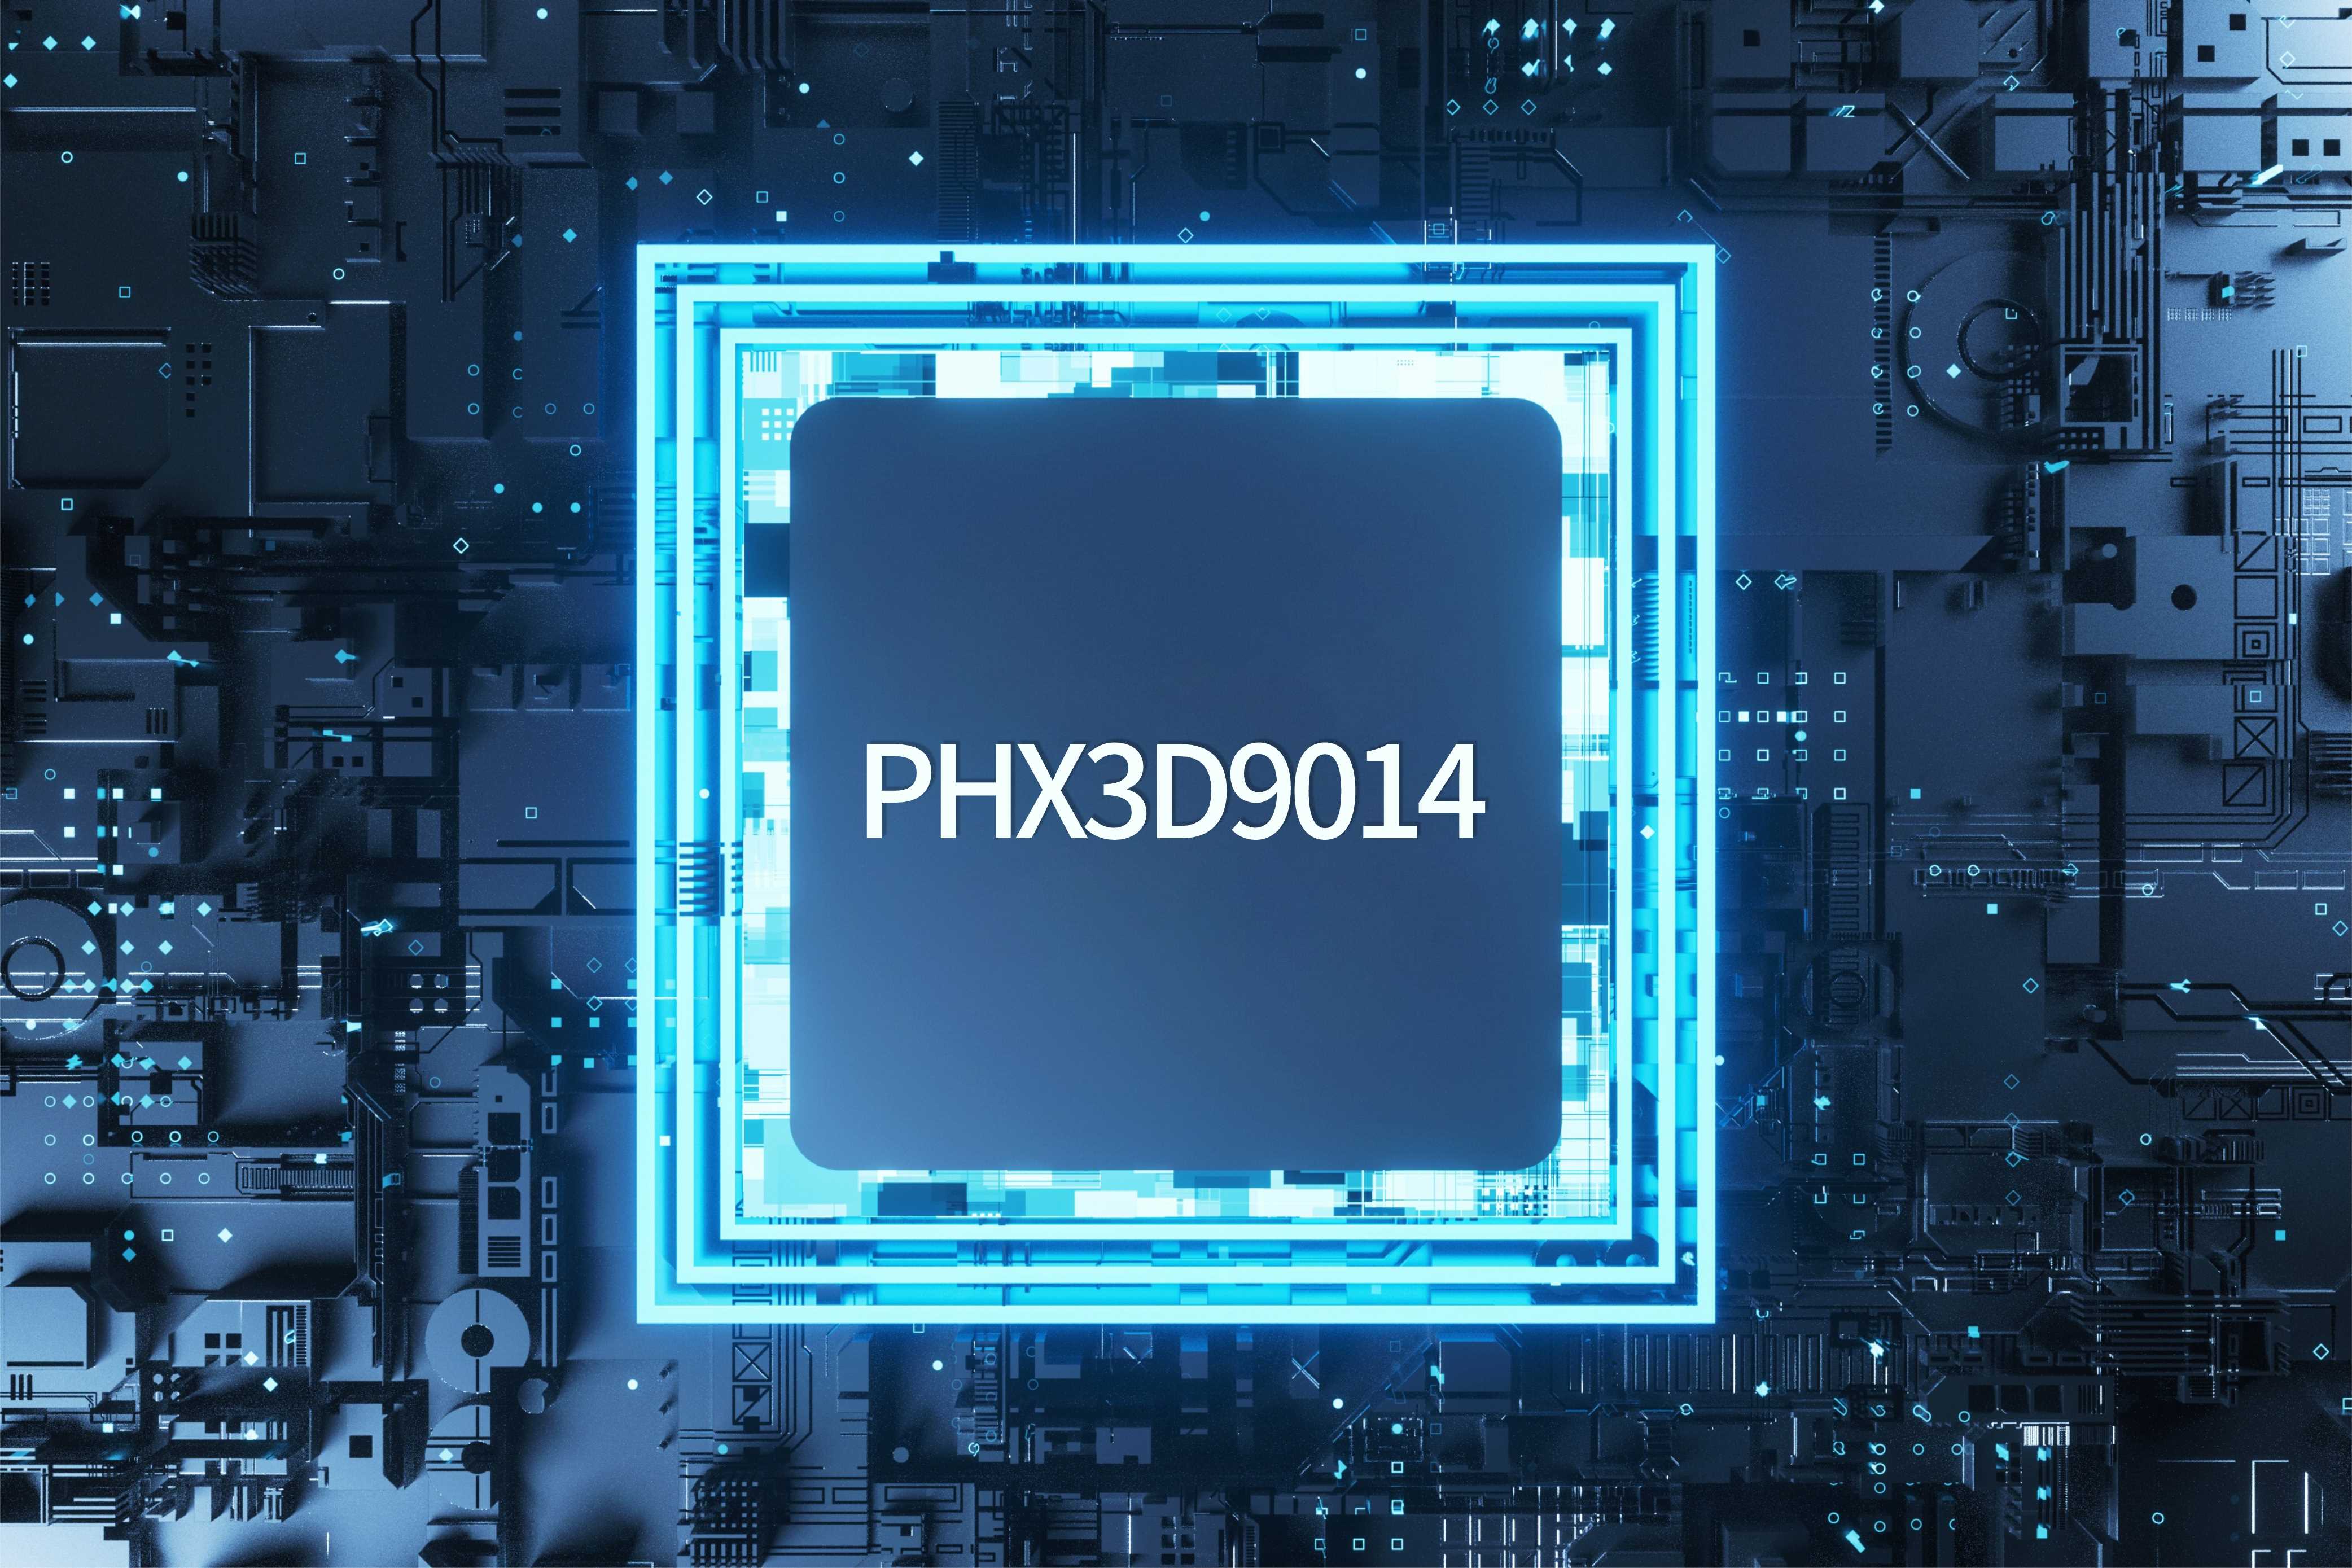 PHX3D9014